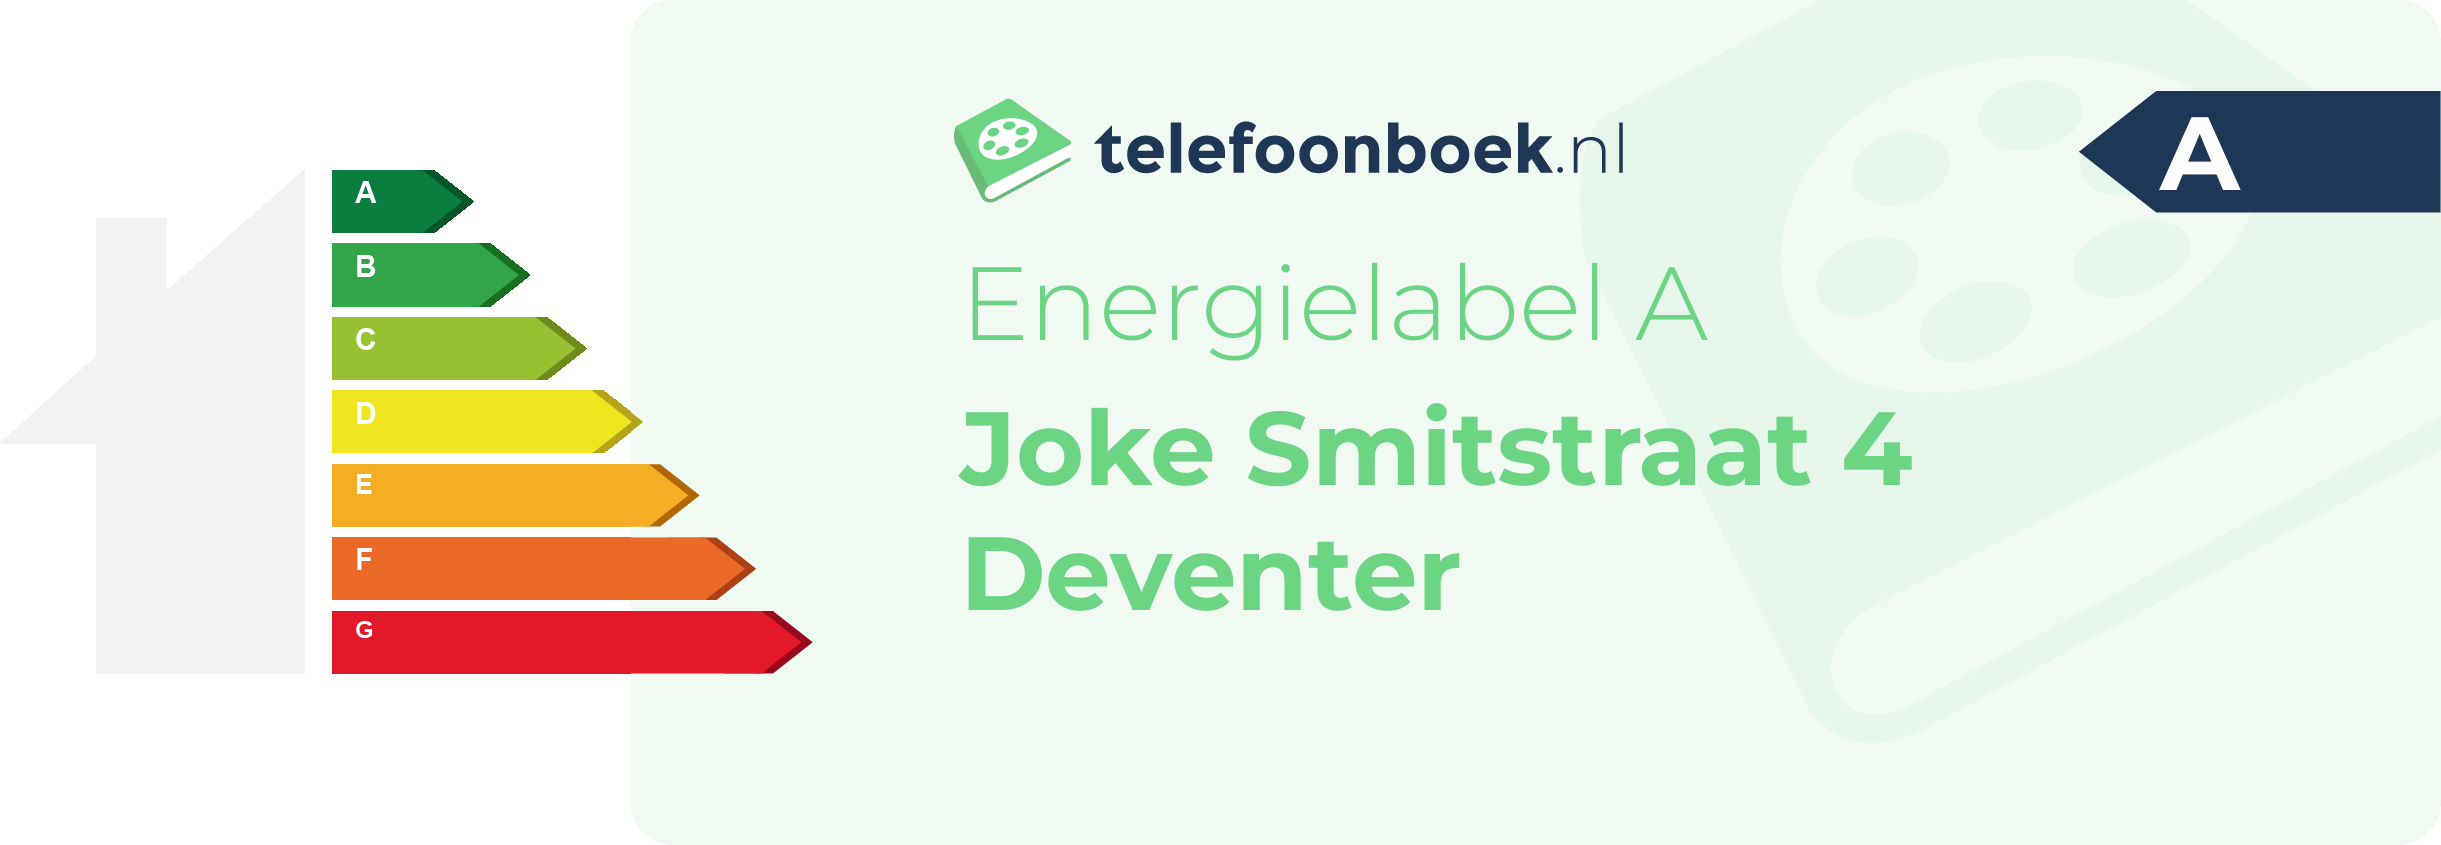 Energielabel Joke Smitstraat 4 Deventer